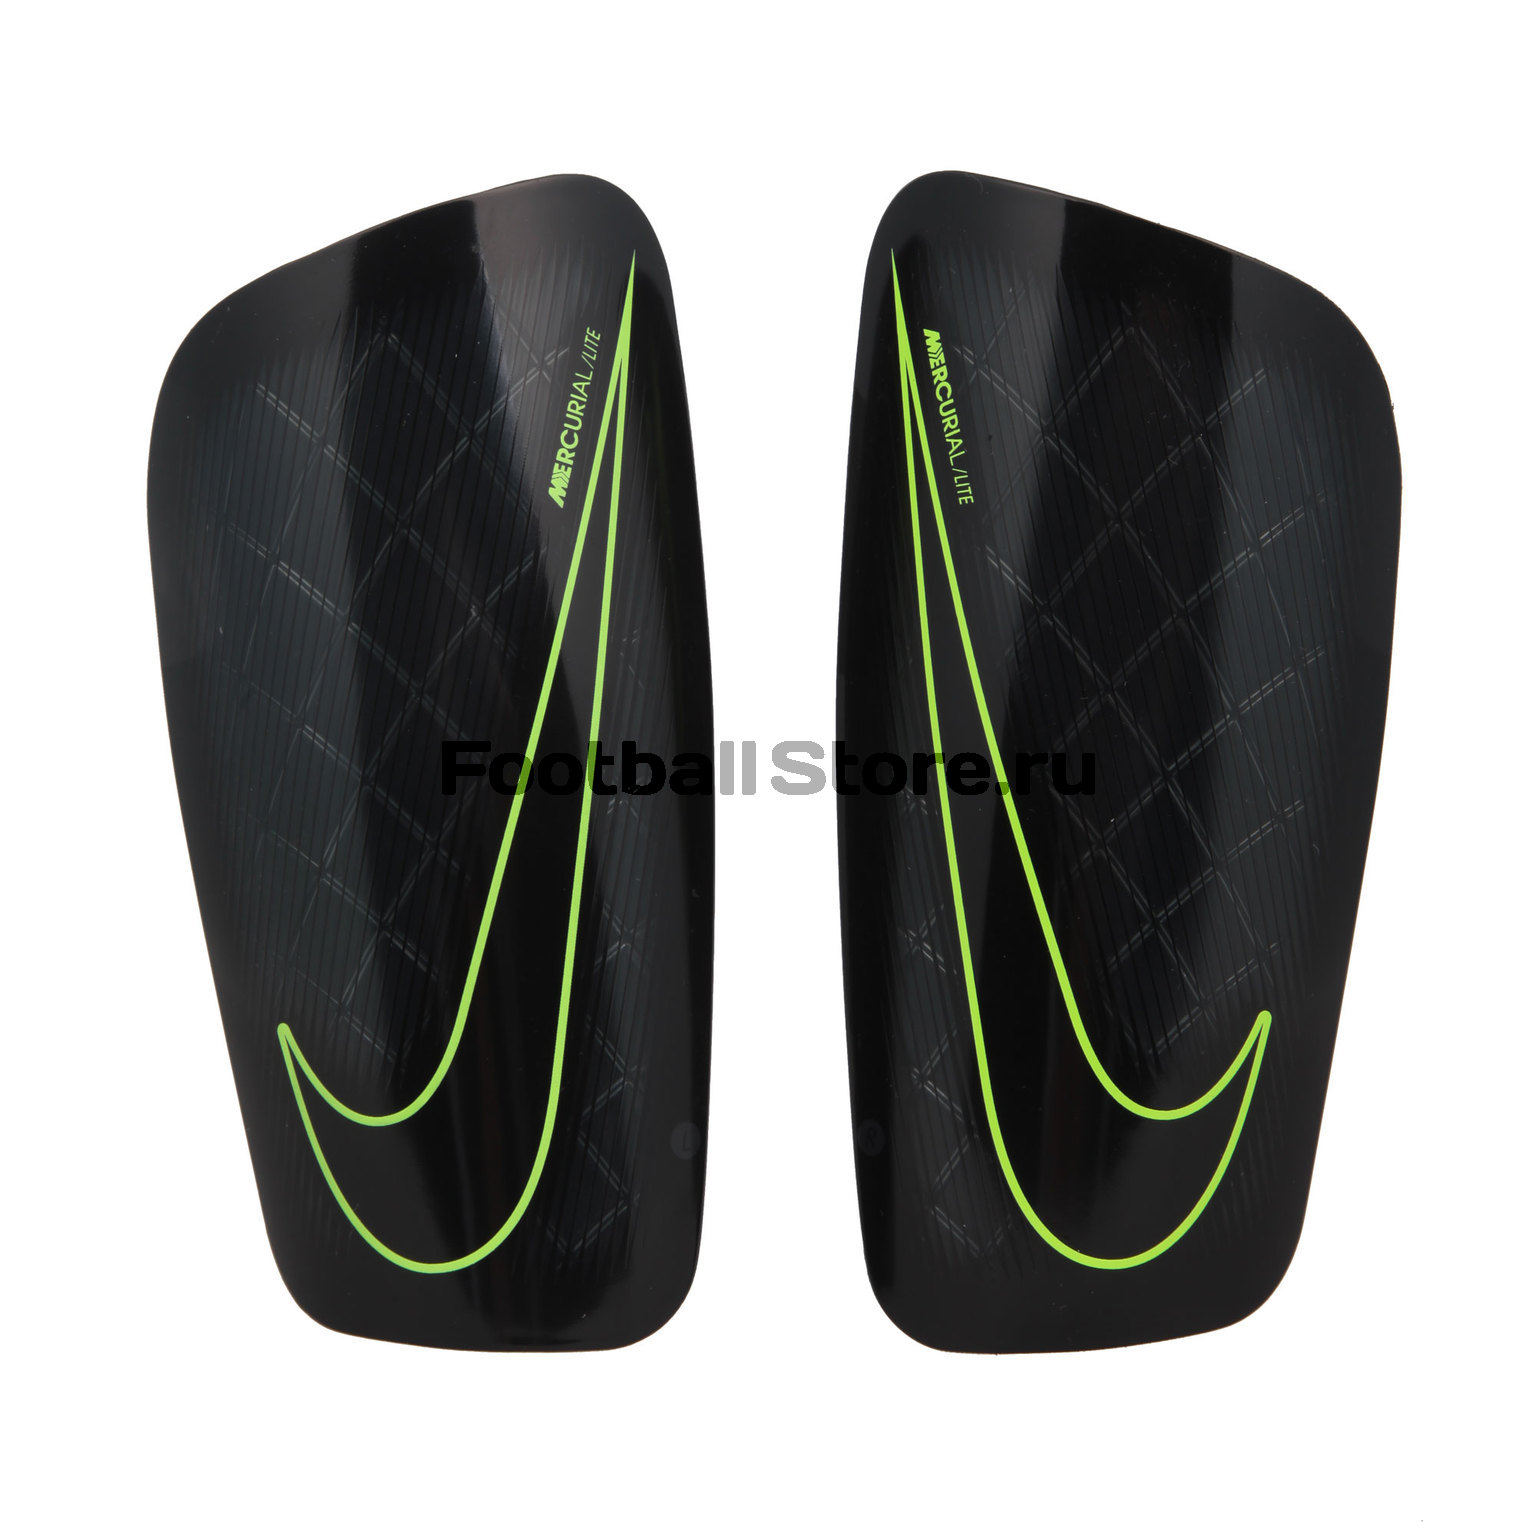 Щитки футбольные Nike Mercurial Lite SP2086-010